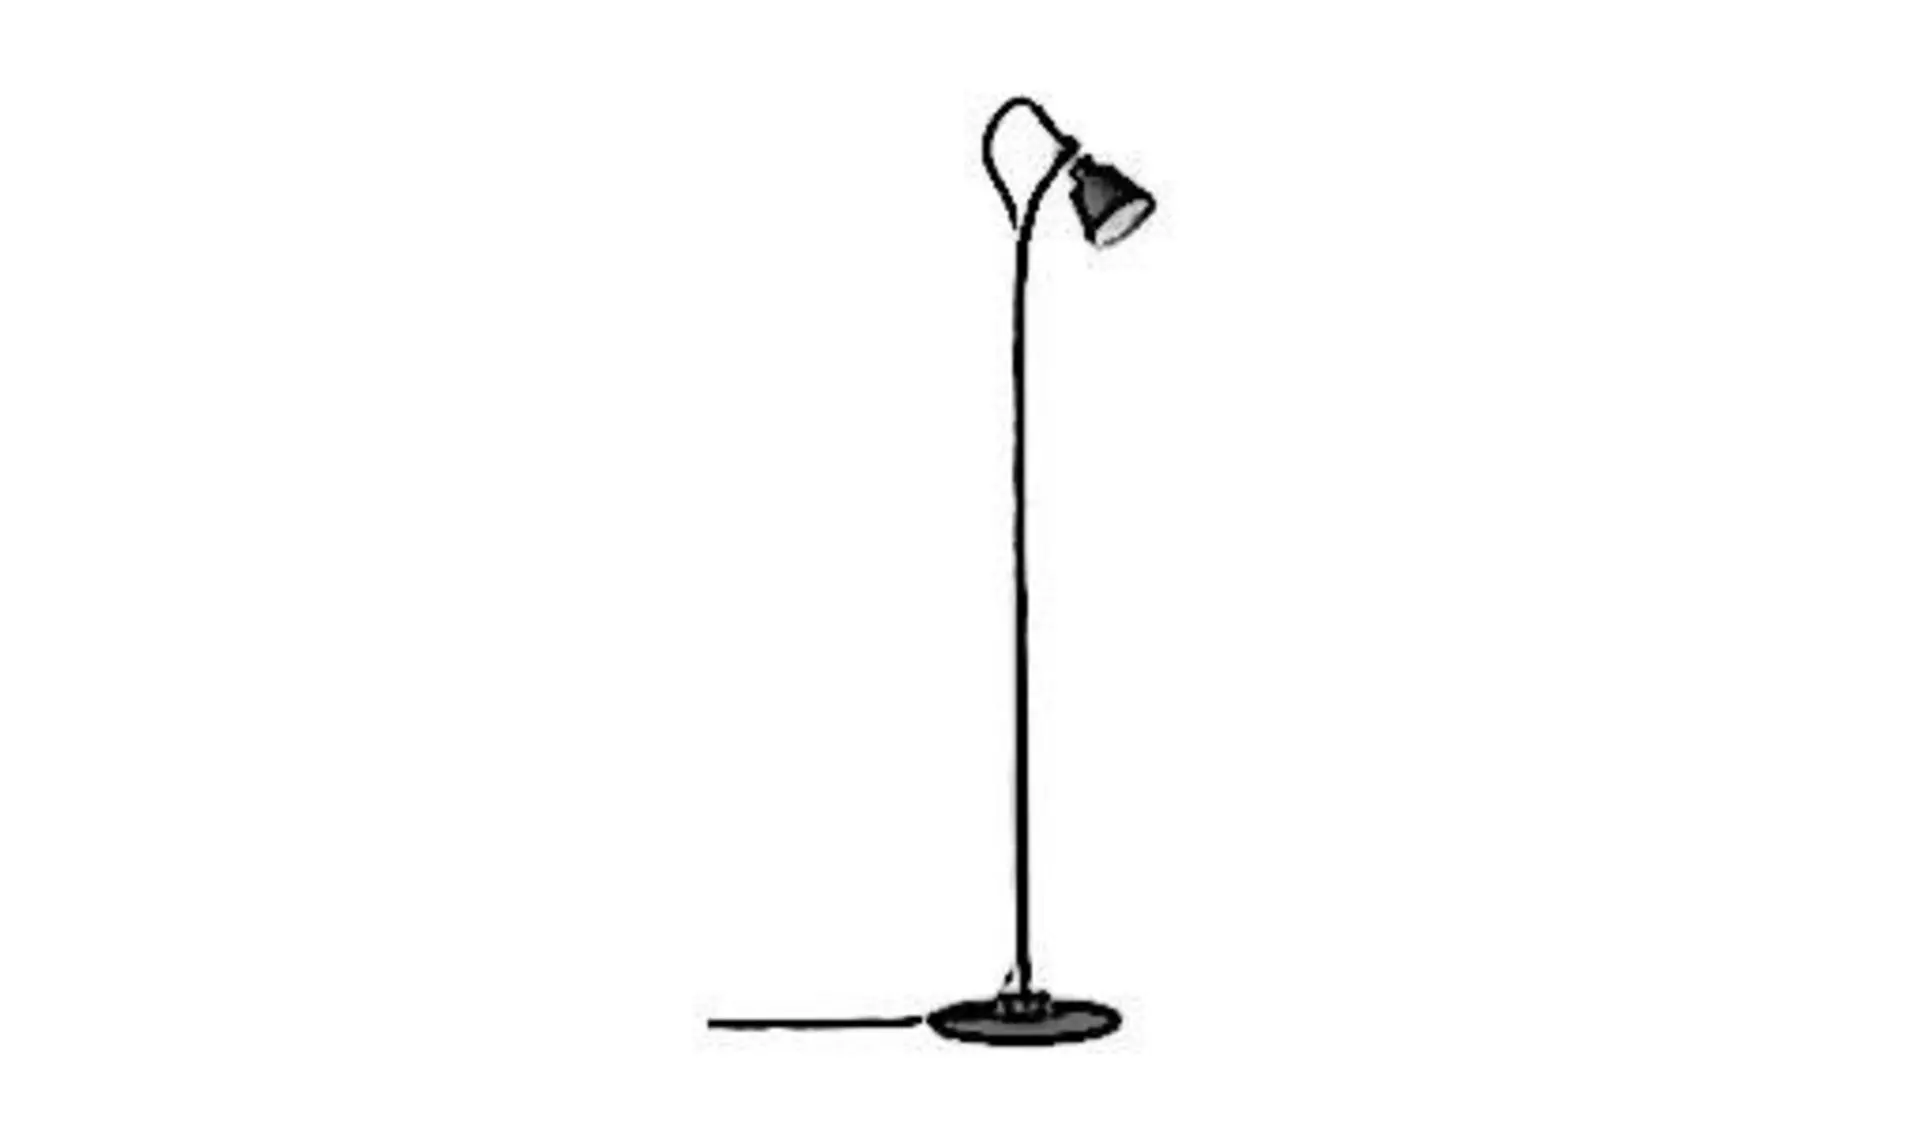 Schwarze Stehlampe mit kleinem Lampenschirm am Ende einer langen, gebogenen Stange steht als Sinnbild für alle Stehlampen.